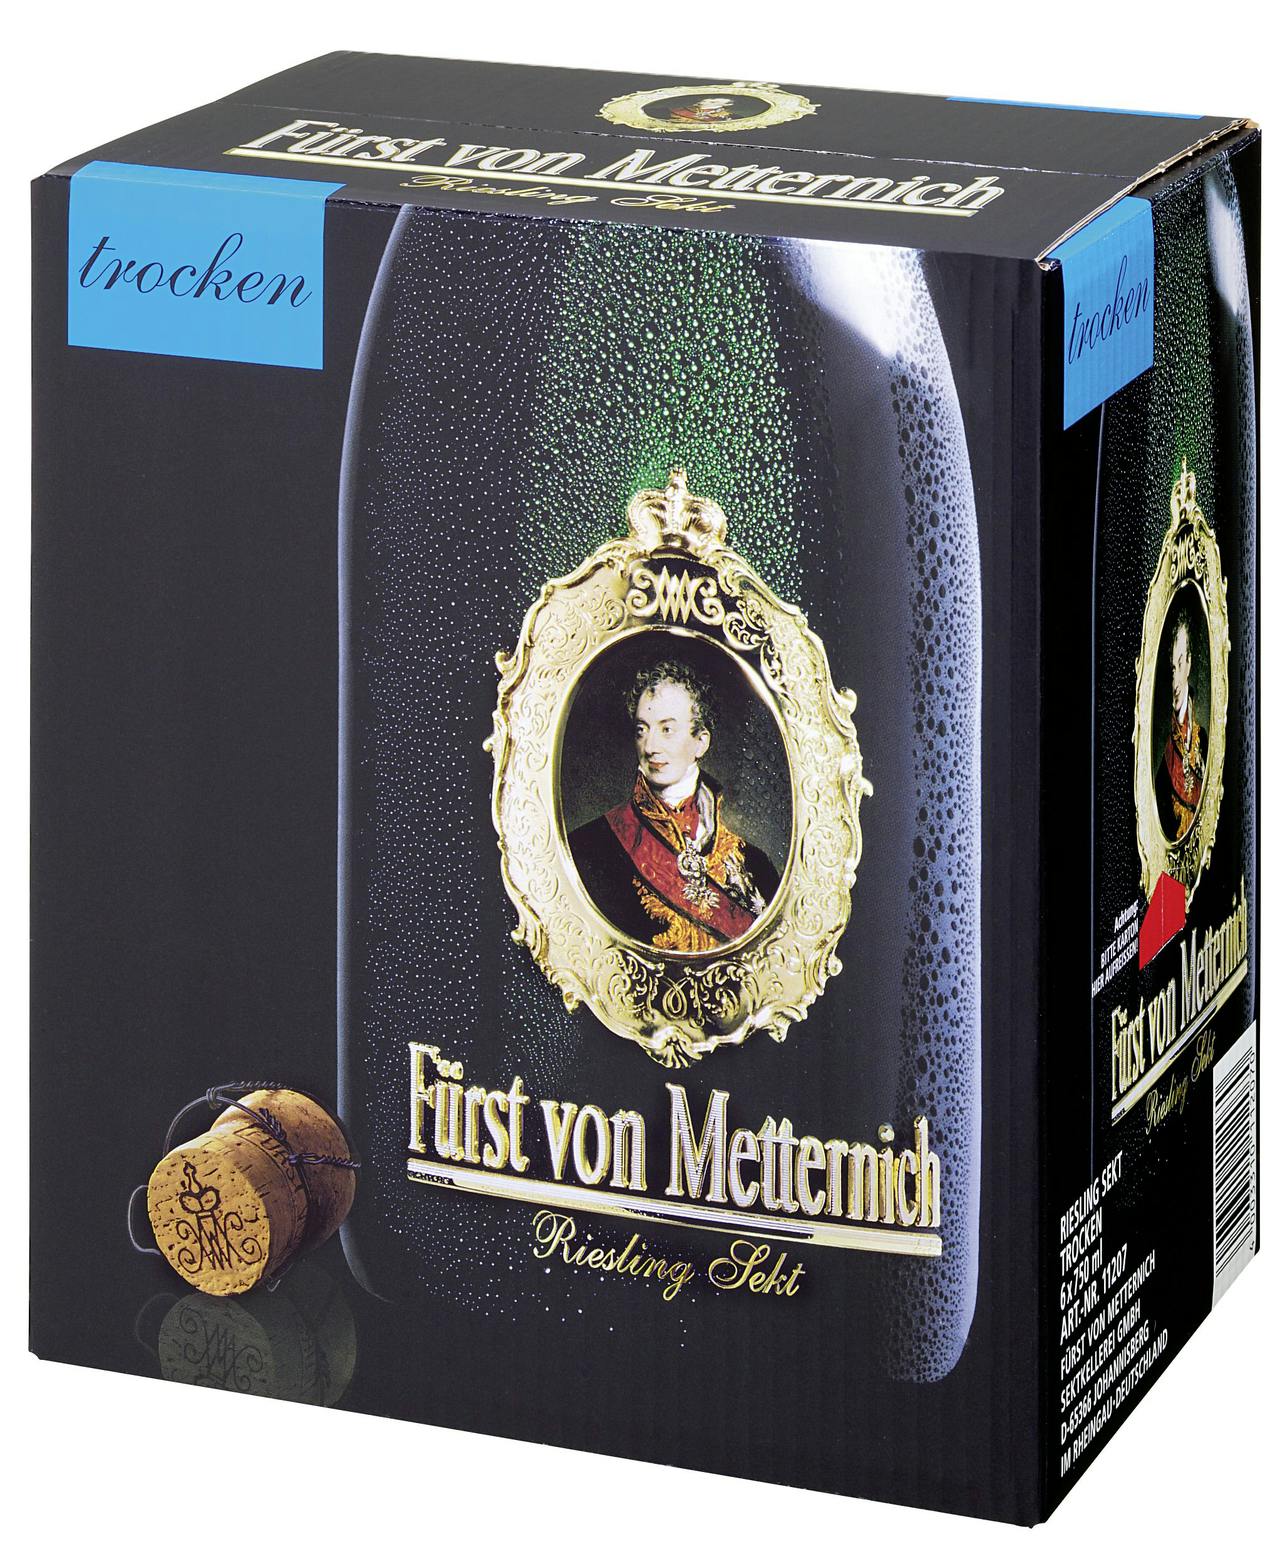 Fürst von Metternich Riesling Sekt trocken 6 Flaschen x 0,75 l (4,5 l) |  METRO Marktplatz